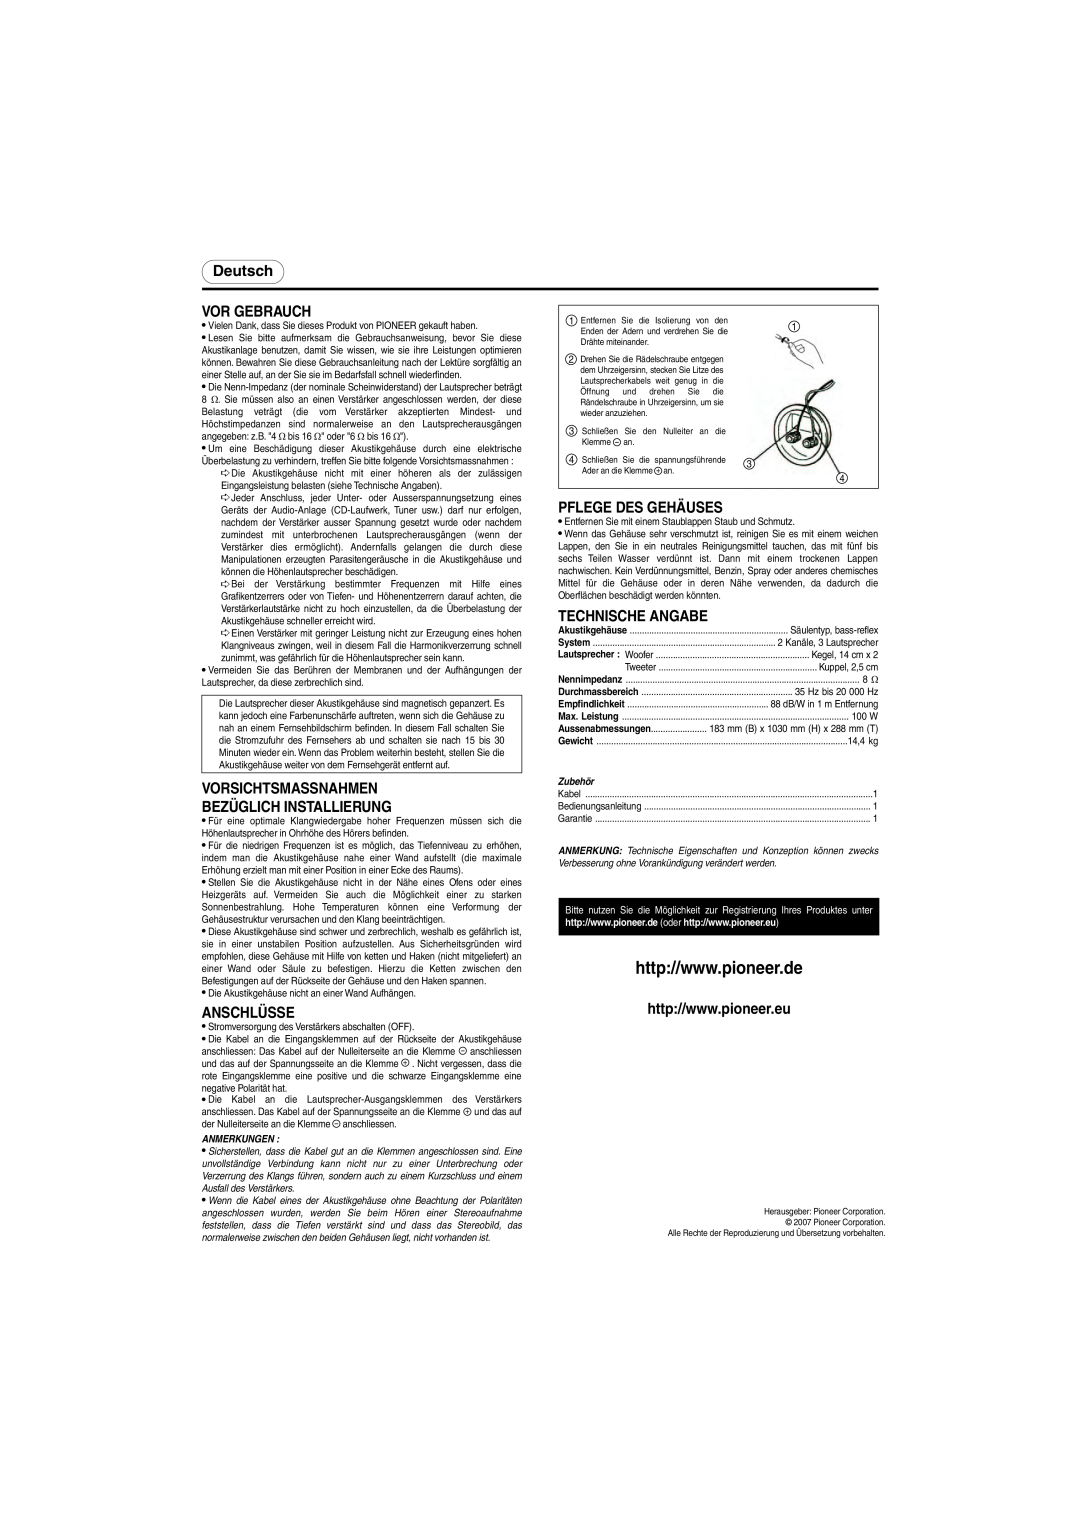 Pioneer S-H320V-W Deutsch, Vor Gebrauch, Pflege Des Gehäuses, Technische Angabe, Anschlüsse, Zubehör, Anmerkungen 